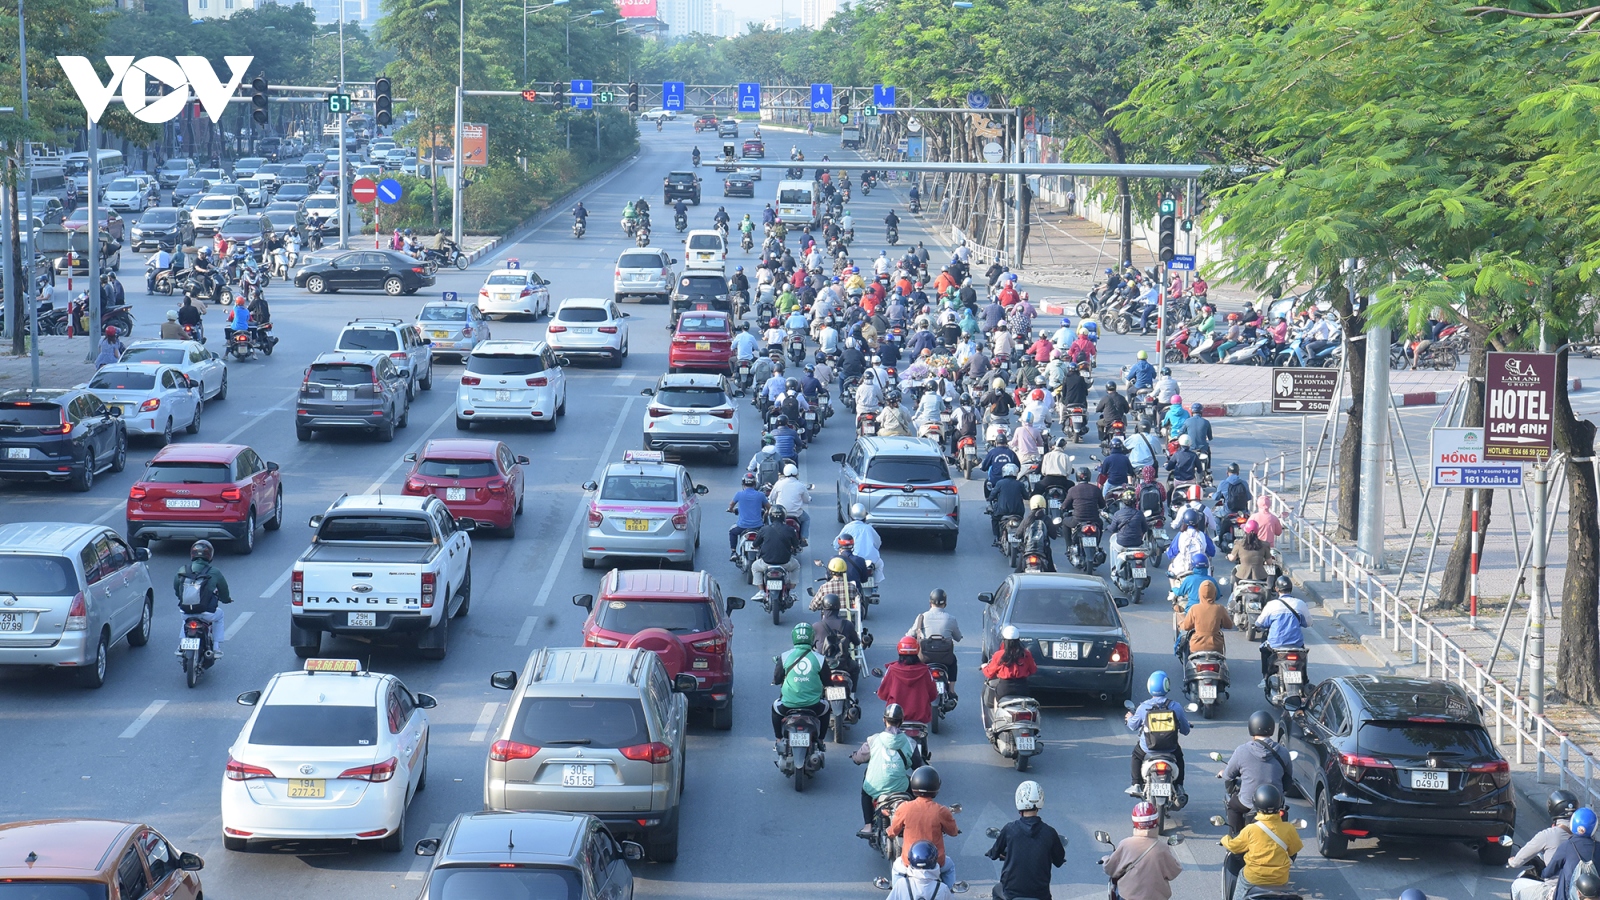 Ô tô dàn hàng ngang, lấn hết làn xe máy trên đường phố Hà Nội